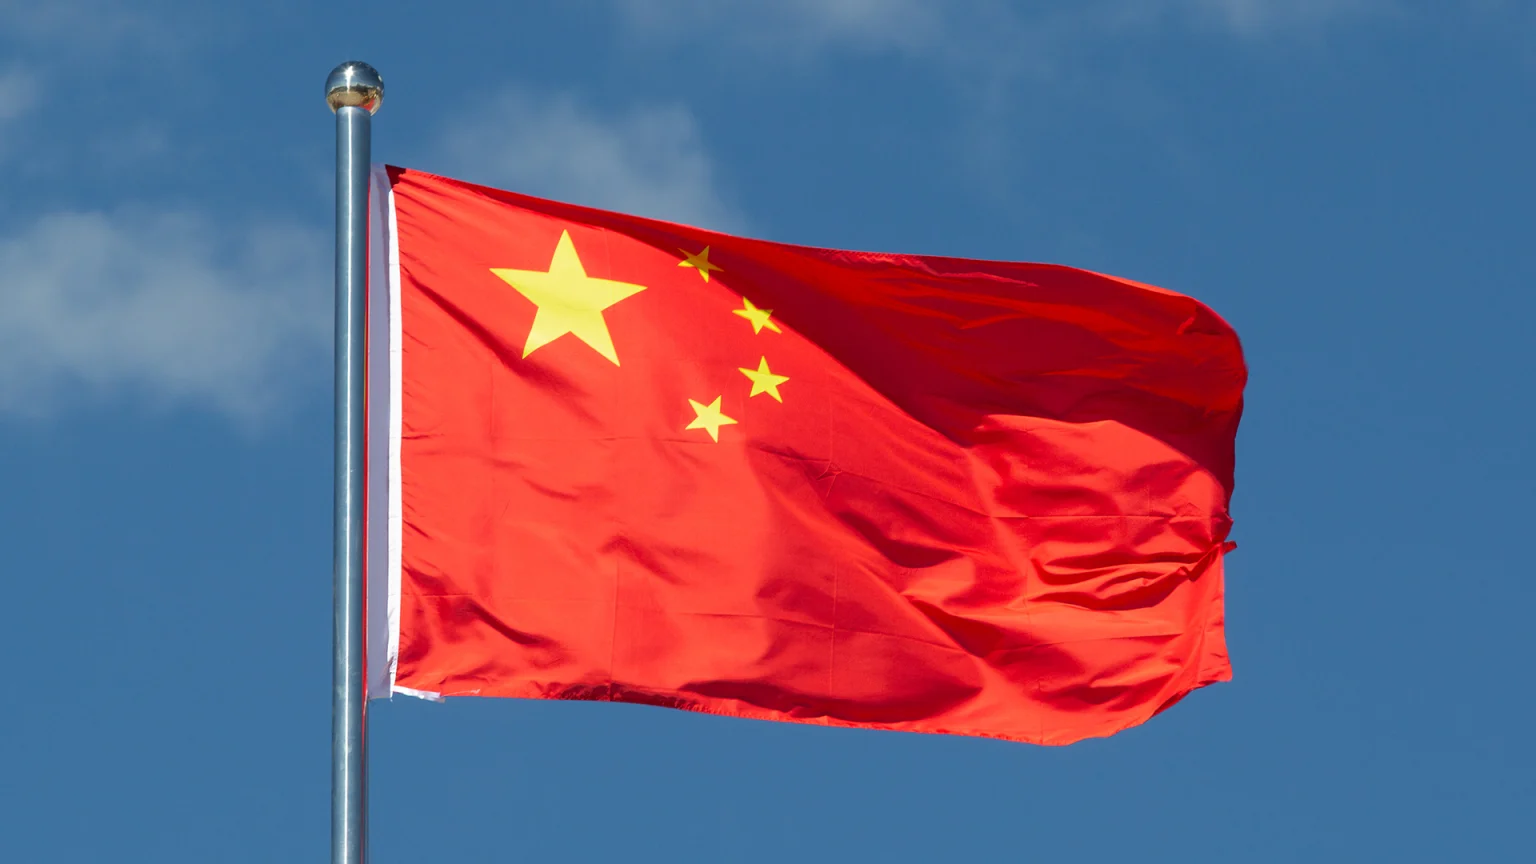 Çin'in çip üretimini desteklemek için 41 milyar dolarlık fon oluşturacağı iddia edildi